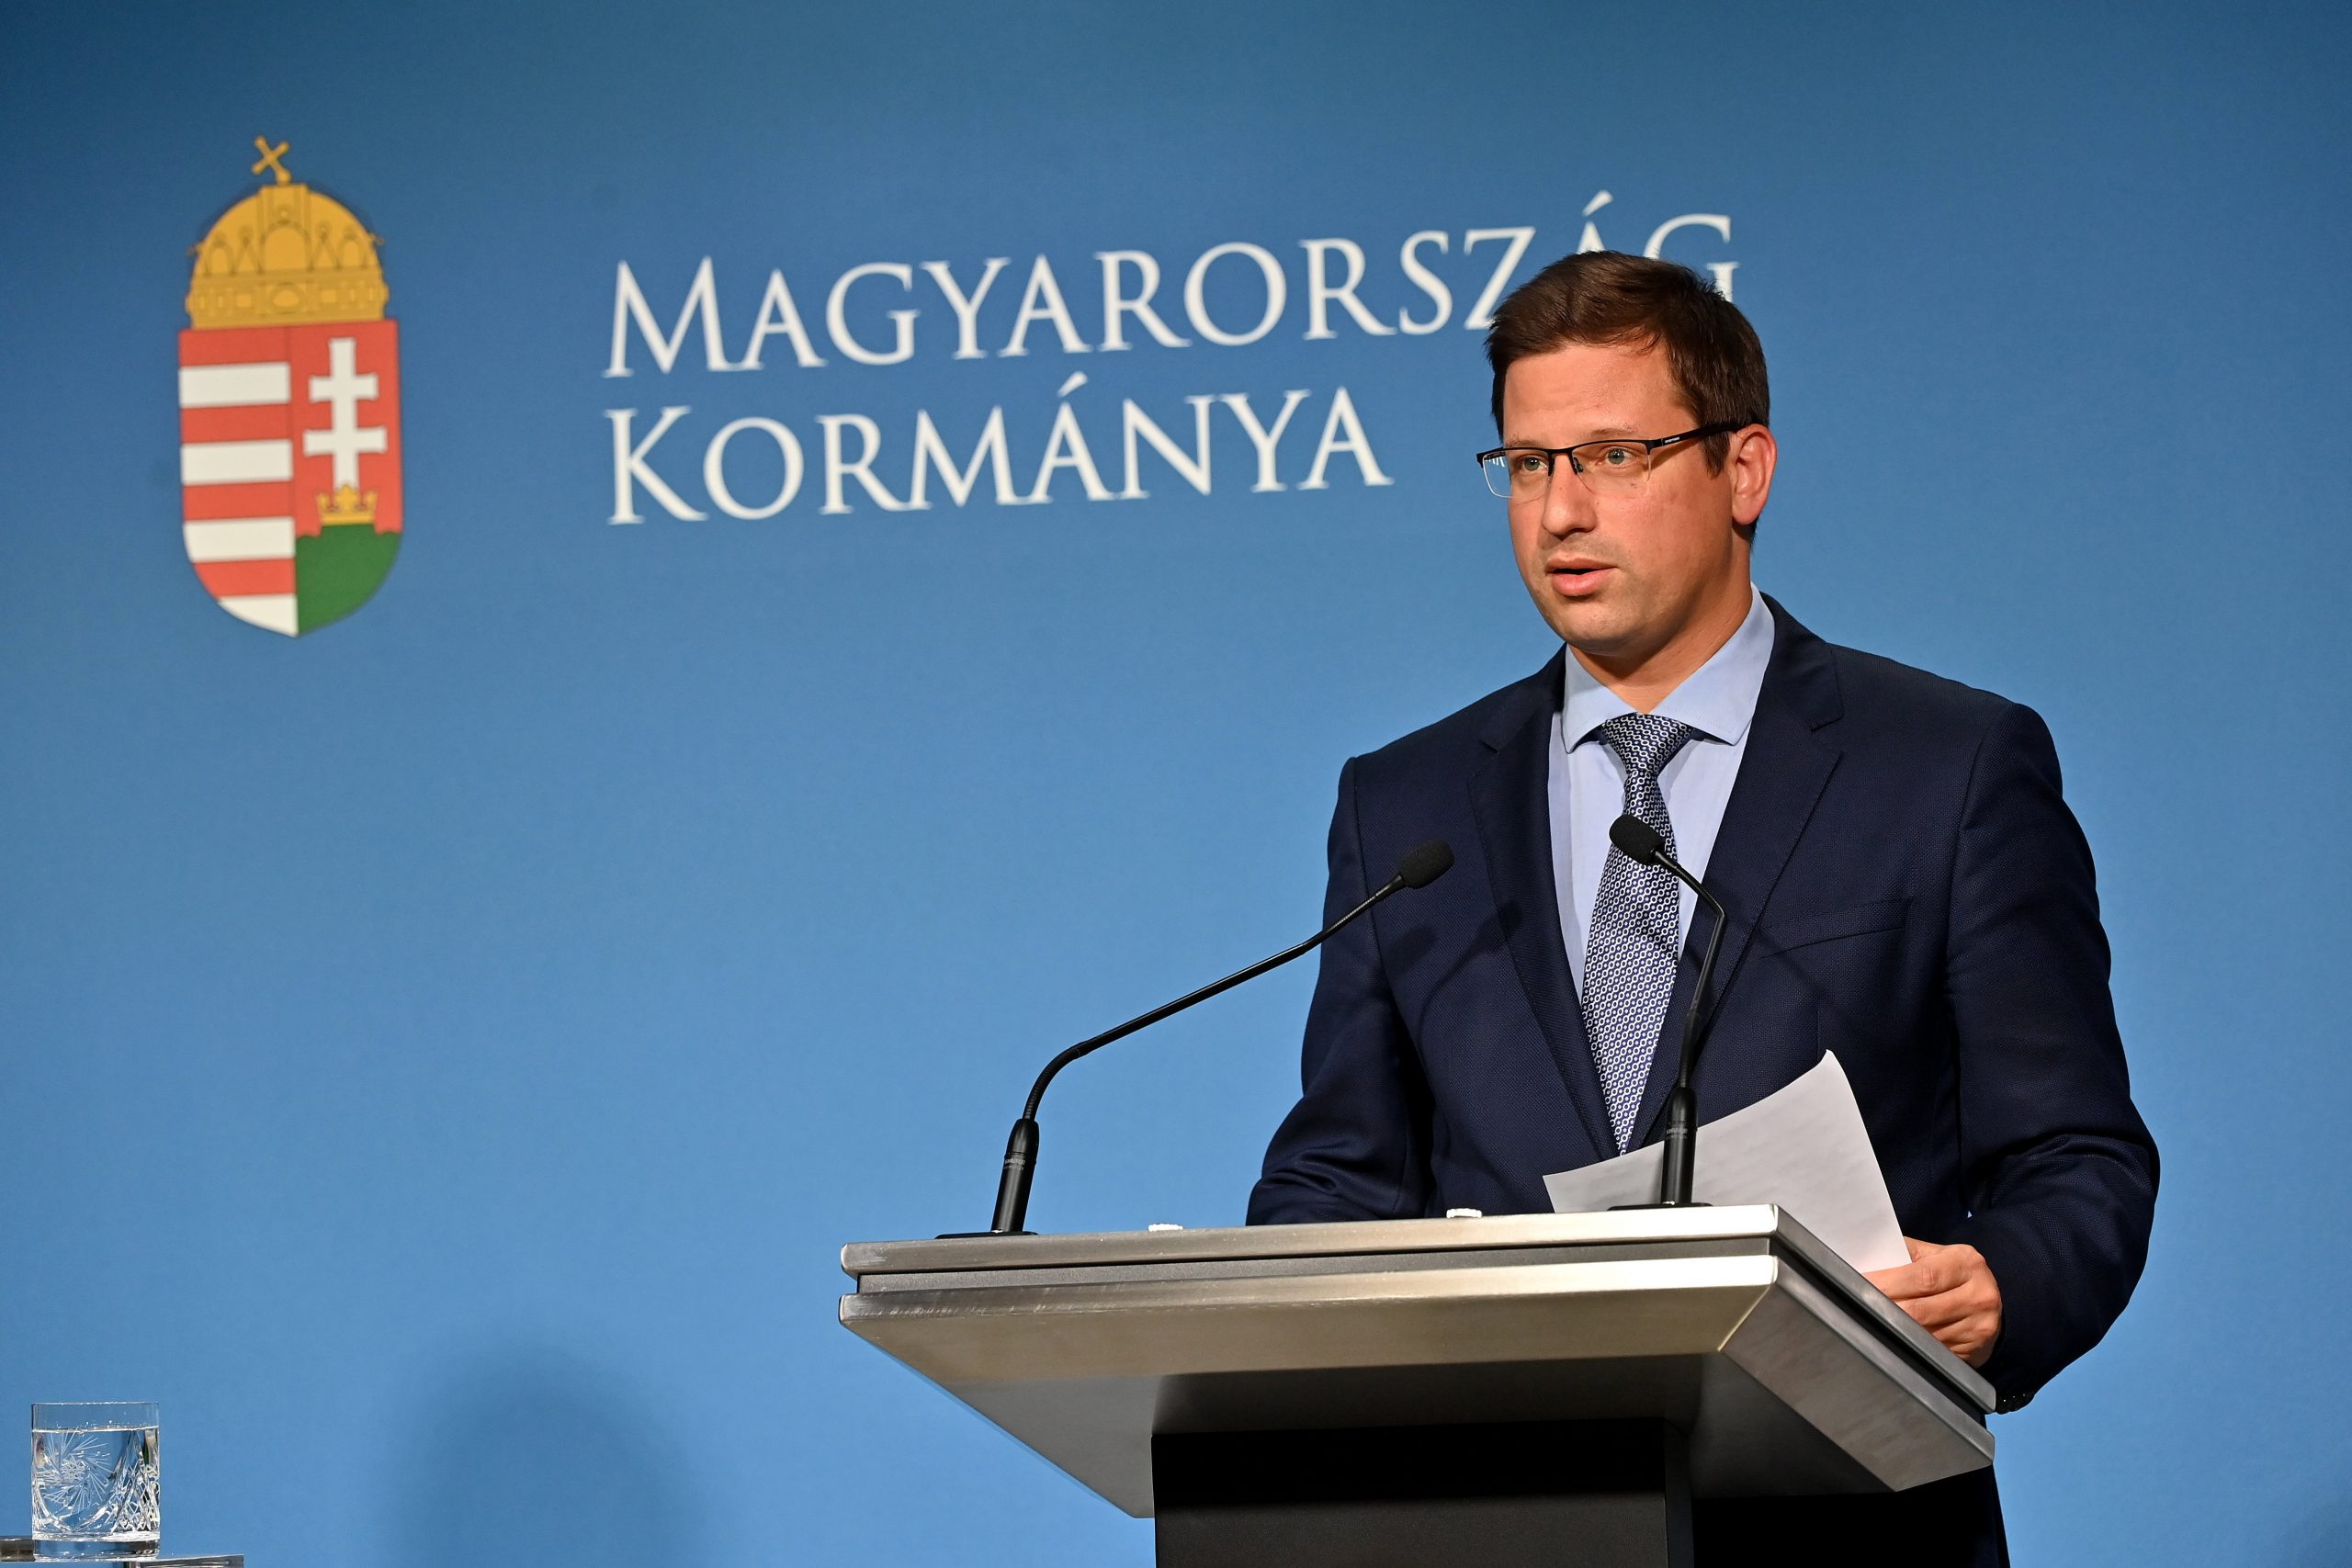 Kanzleramtsminister Gulyás positiv auf COVID getestet